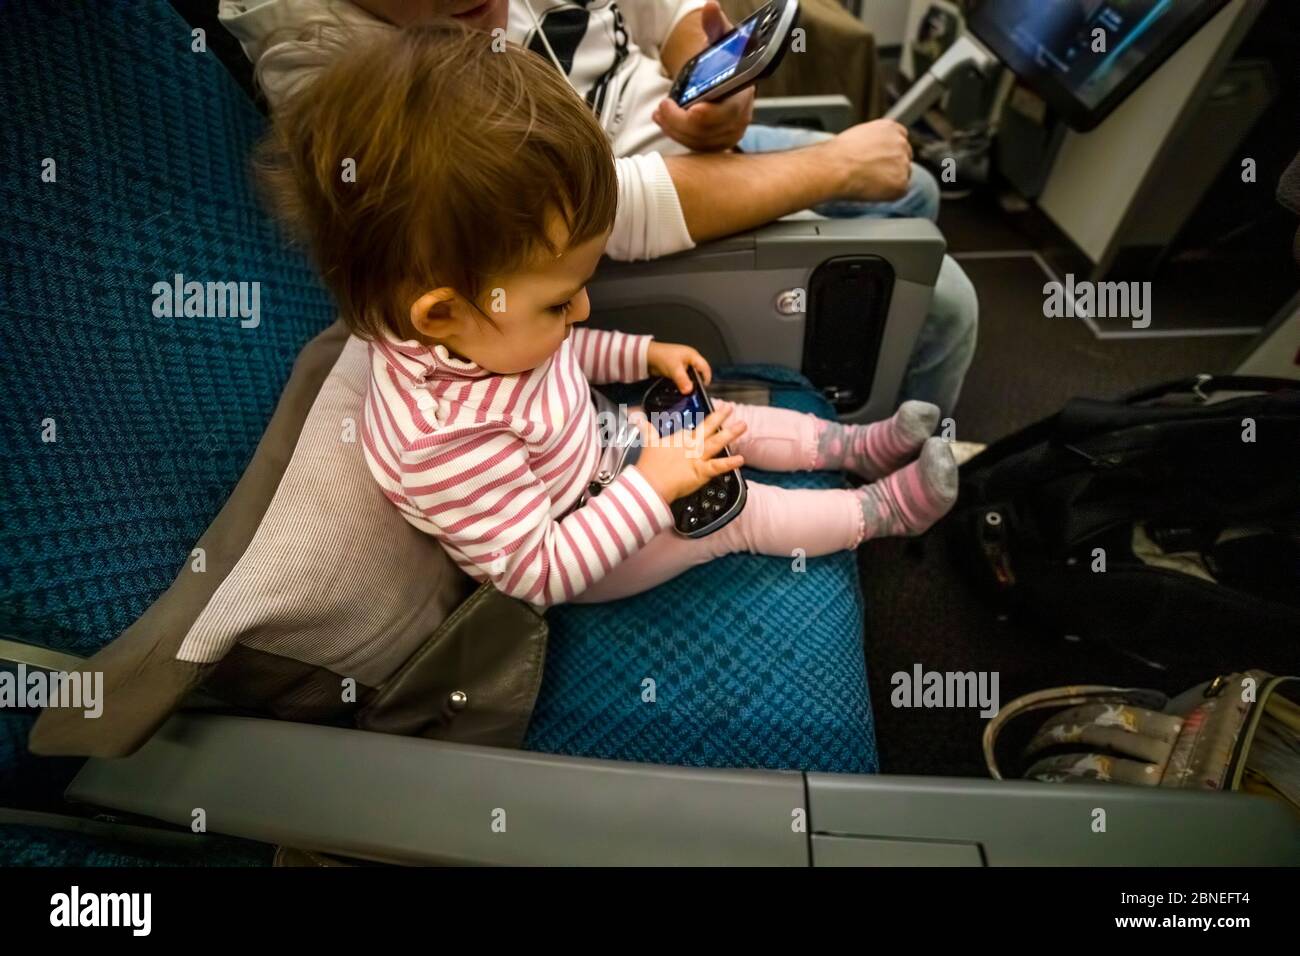 Unterhaltung an Bord des Flugzeugs. Kleinkind sitzen auf dem Flugzeug in den Sitz und spielen Spaß in der Multimedia-System Fernbedienung Stockfoto